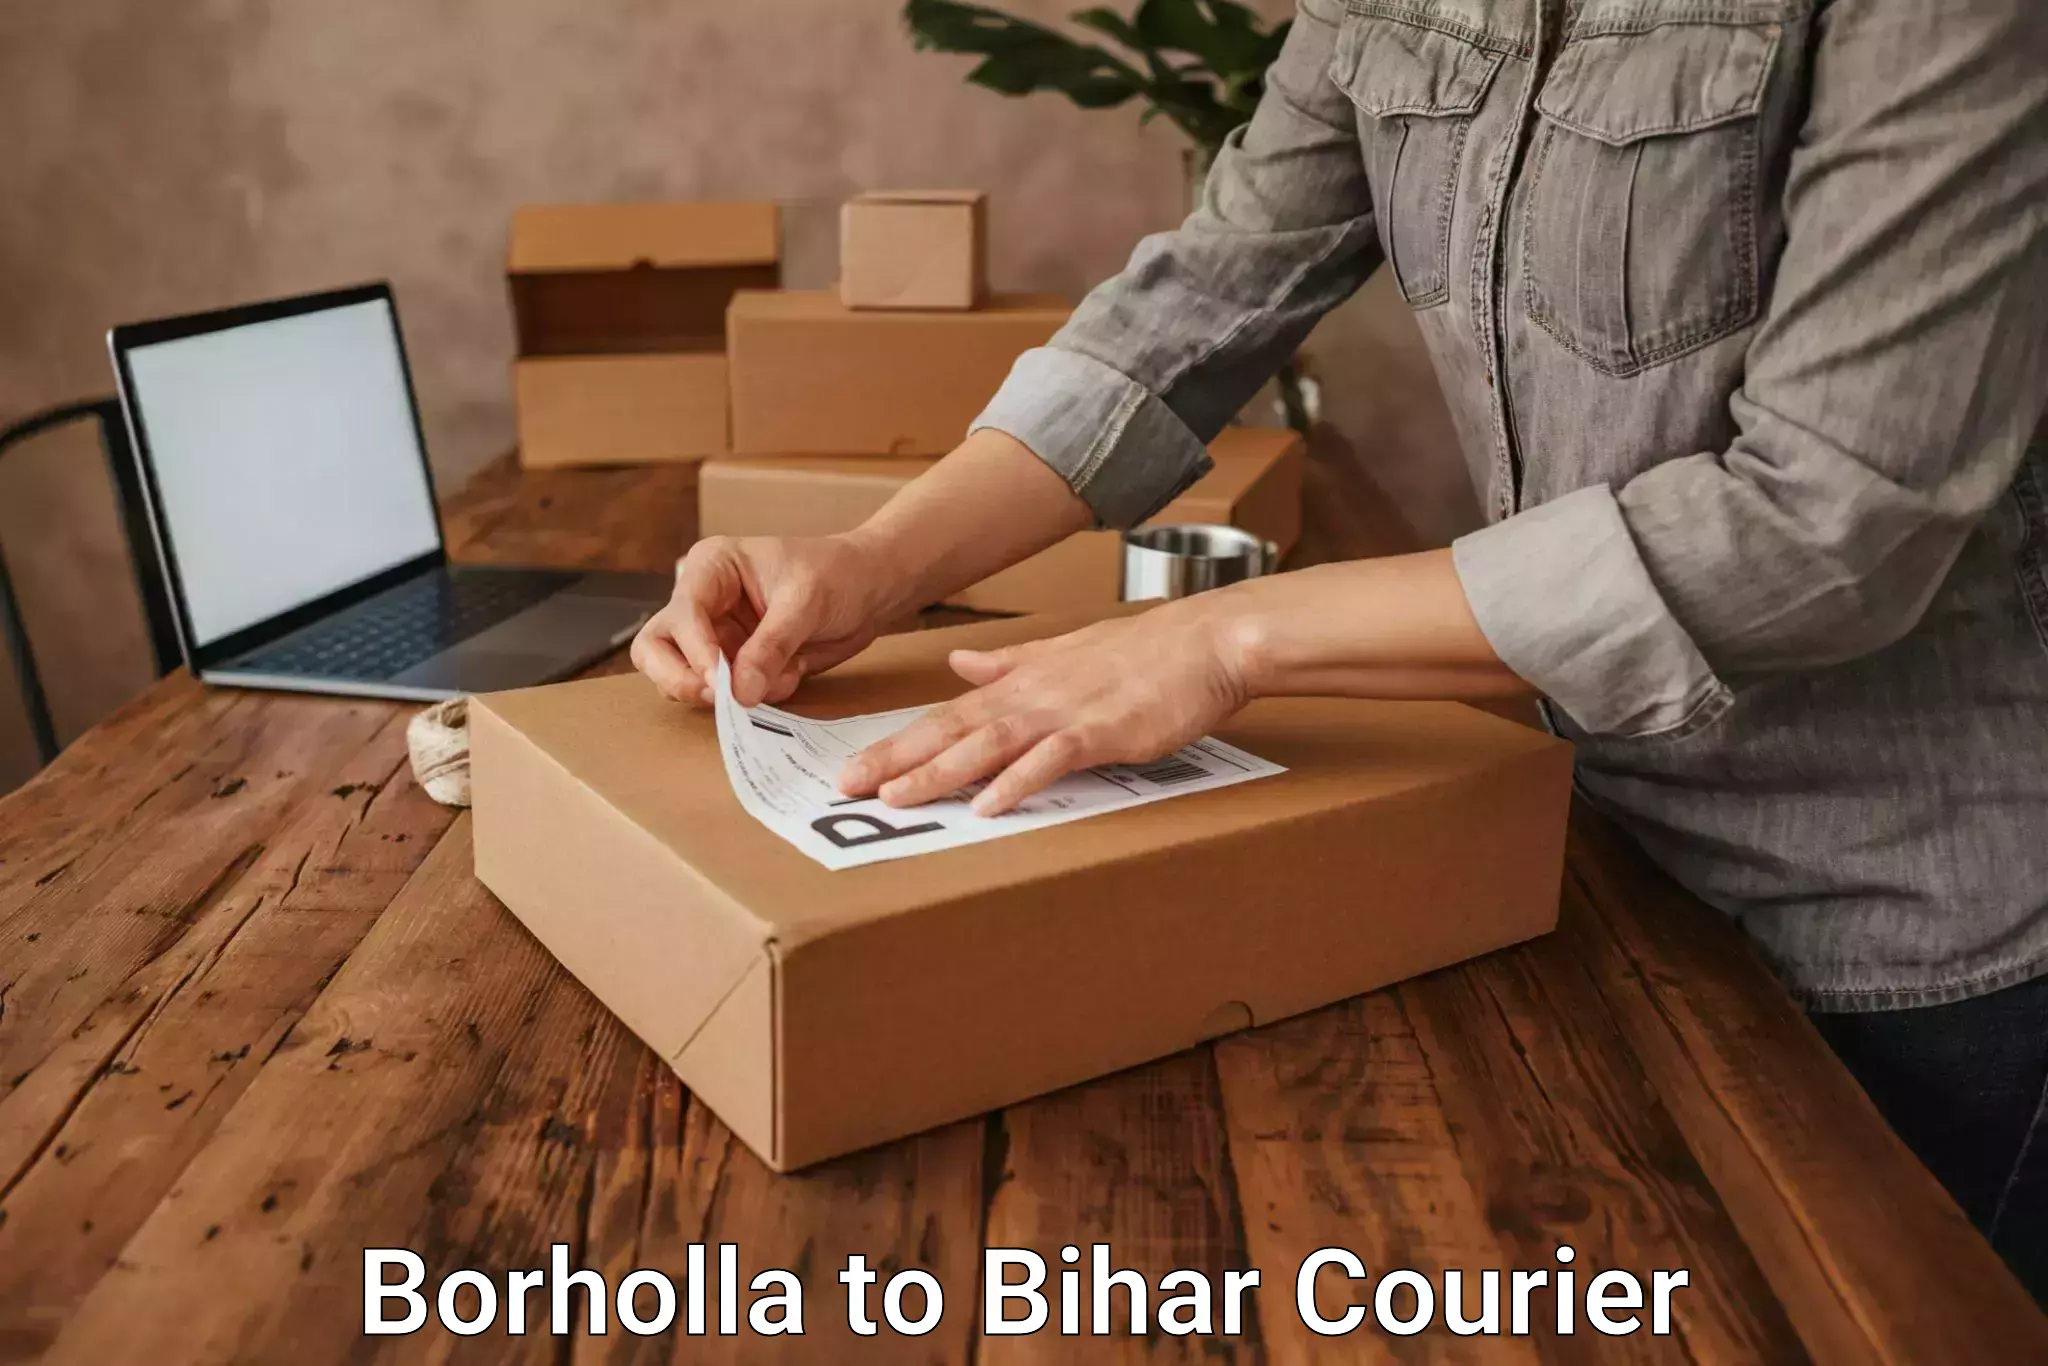 Modern courier technology in Borholla to Malmaliya